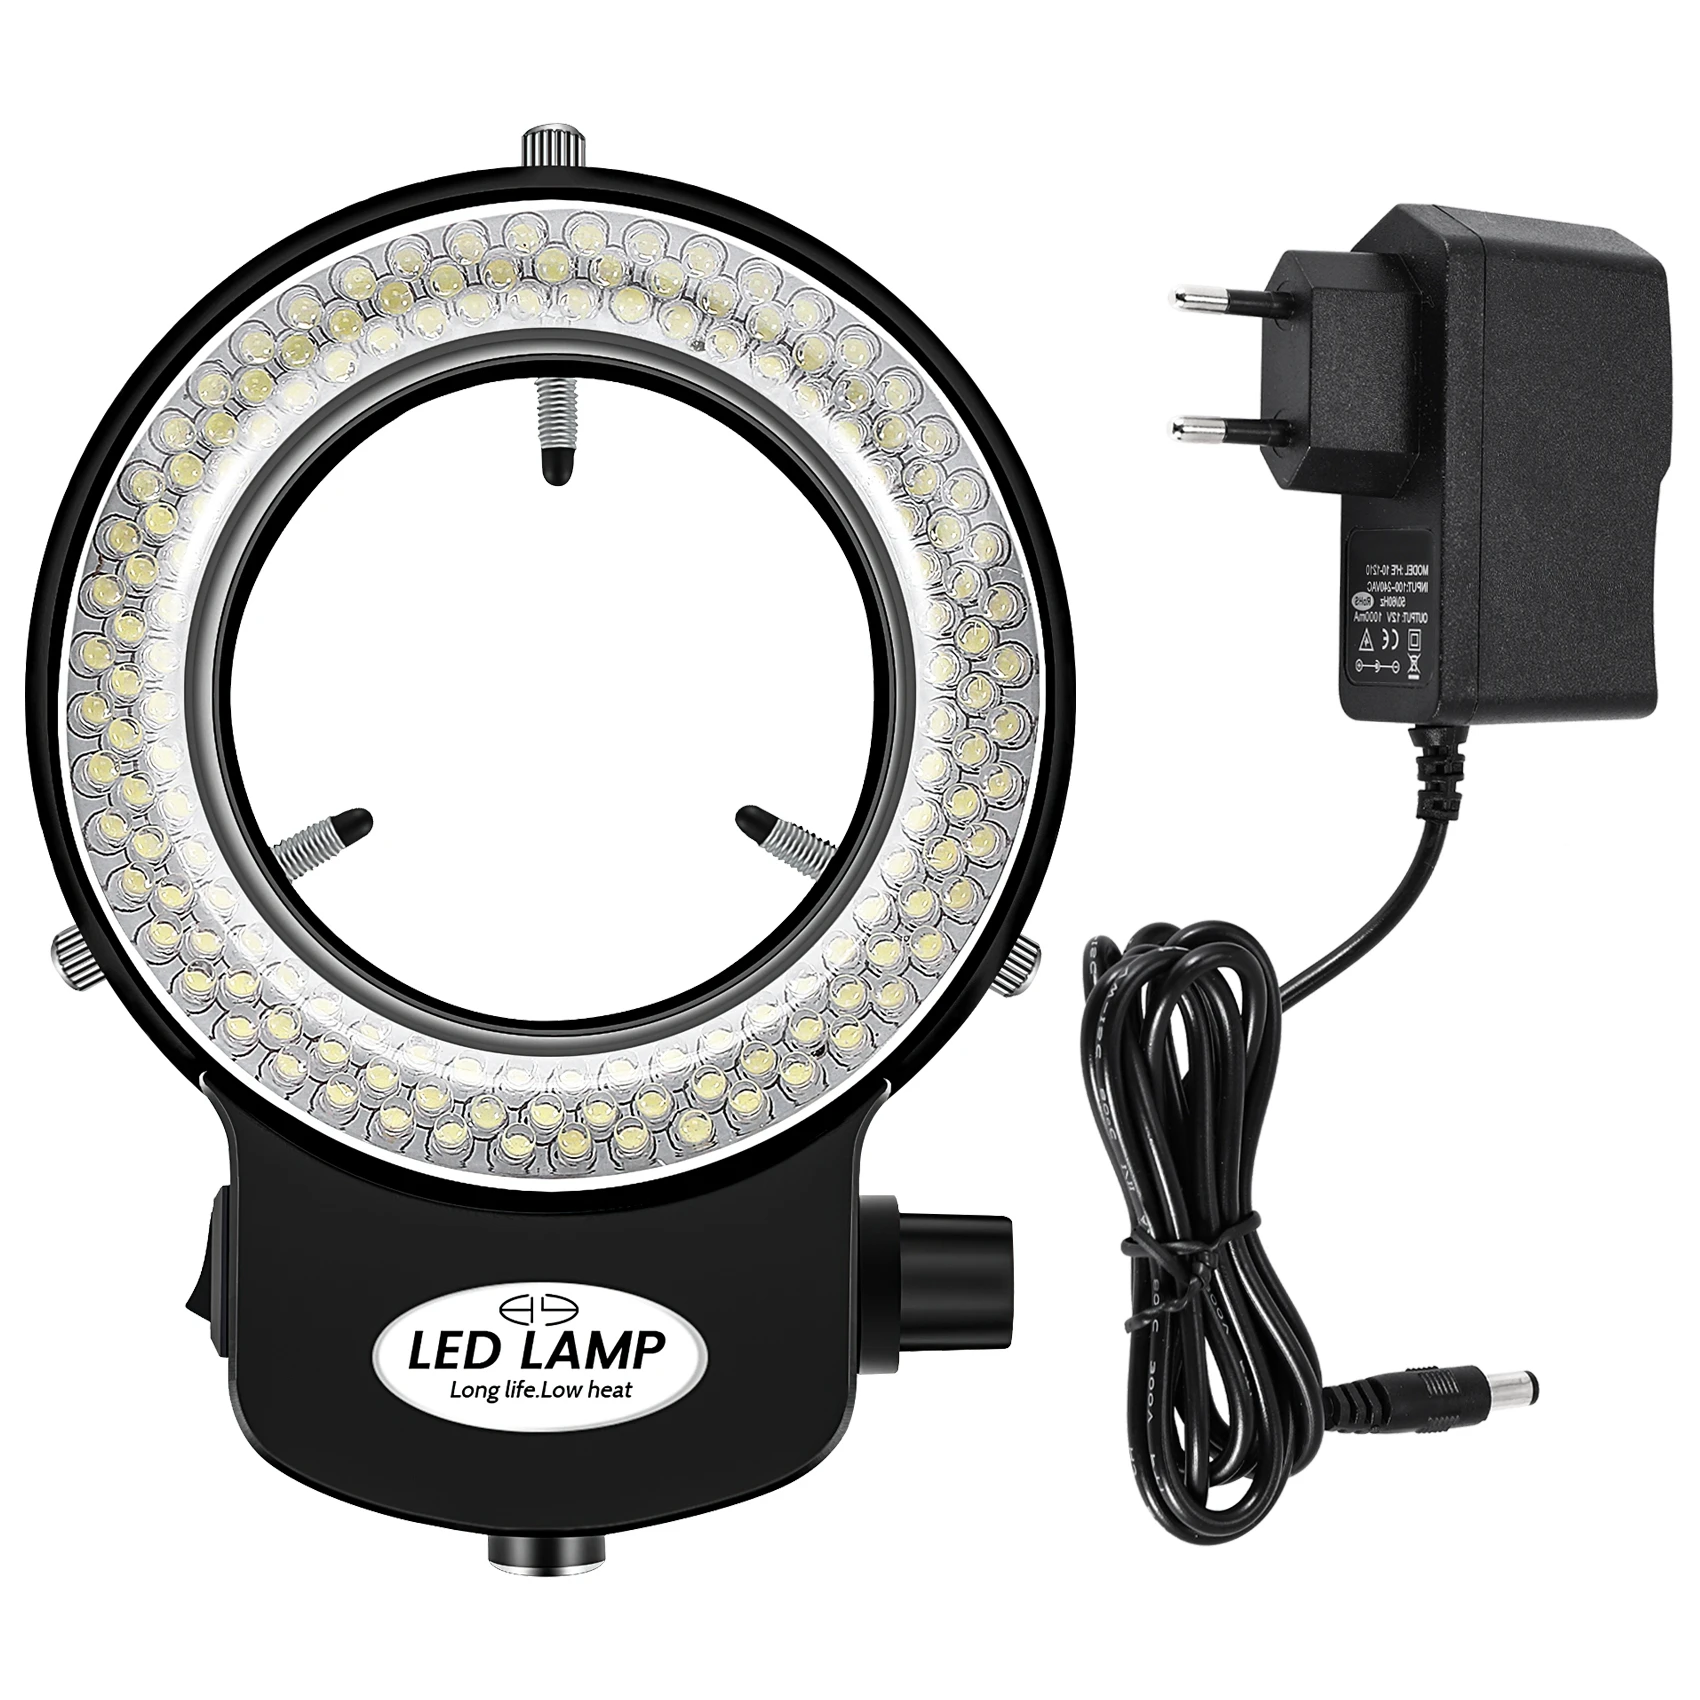 144 LED miniszkóp gyűrű fény gyűrű fény 0 - 100% állítható lámpa miniszkóp gyűrűfényhez - 1